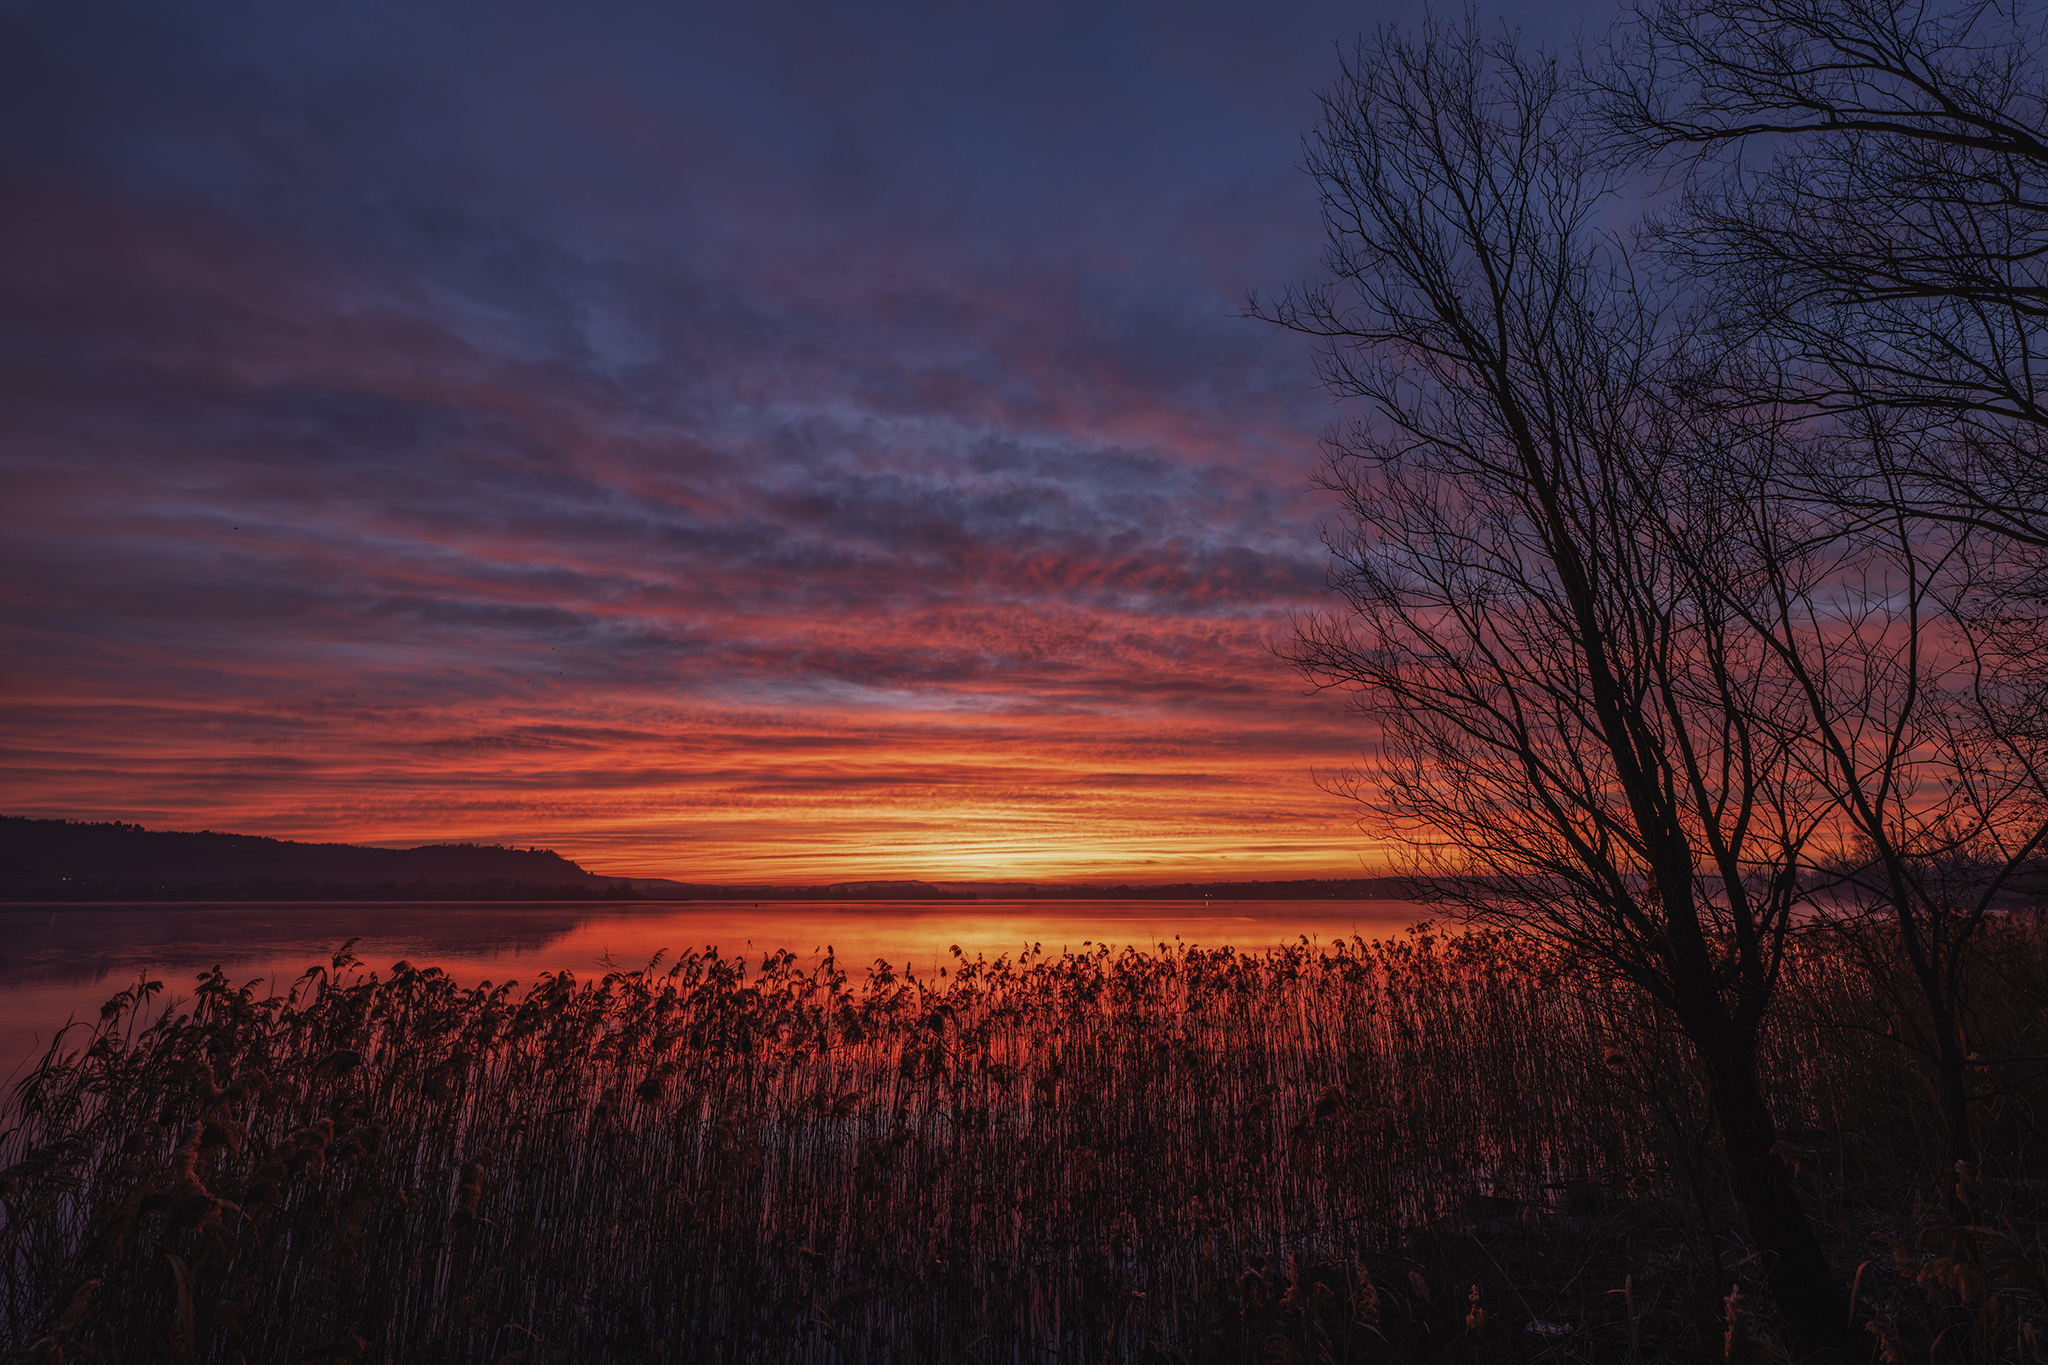 Just before dawn, Dormelletto, Lake Maggiore...